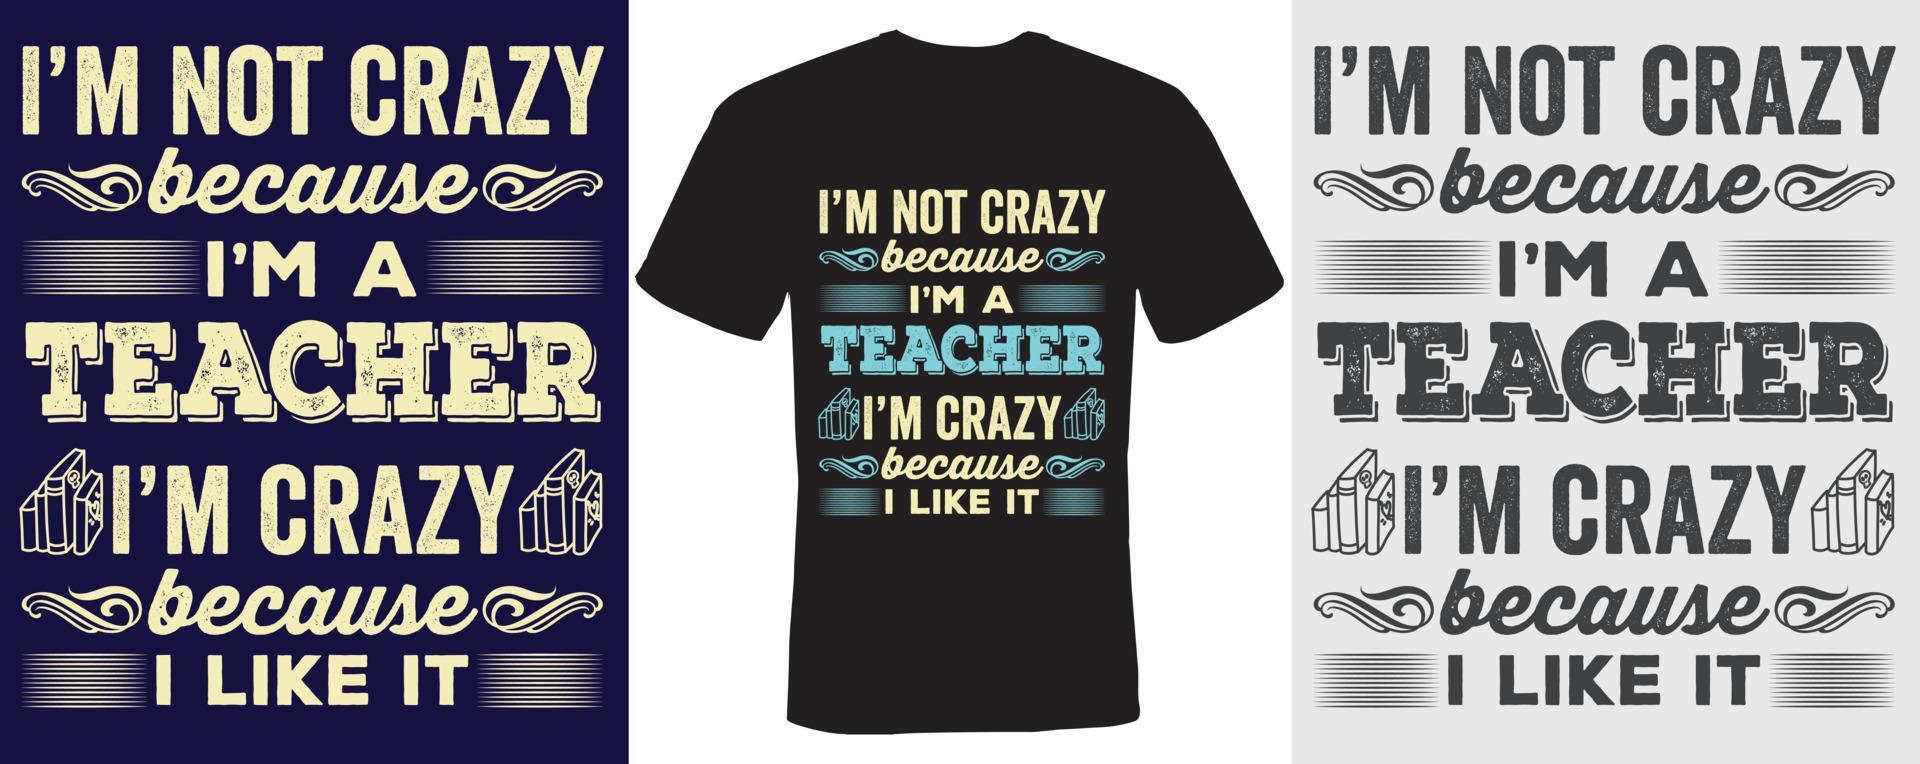 I m not crazy because I m a teacher I m crazy because I like it T shirt design for Teacher vector